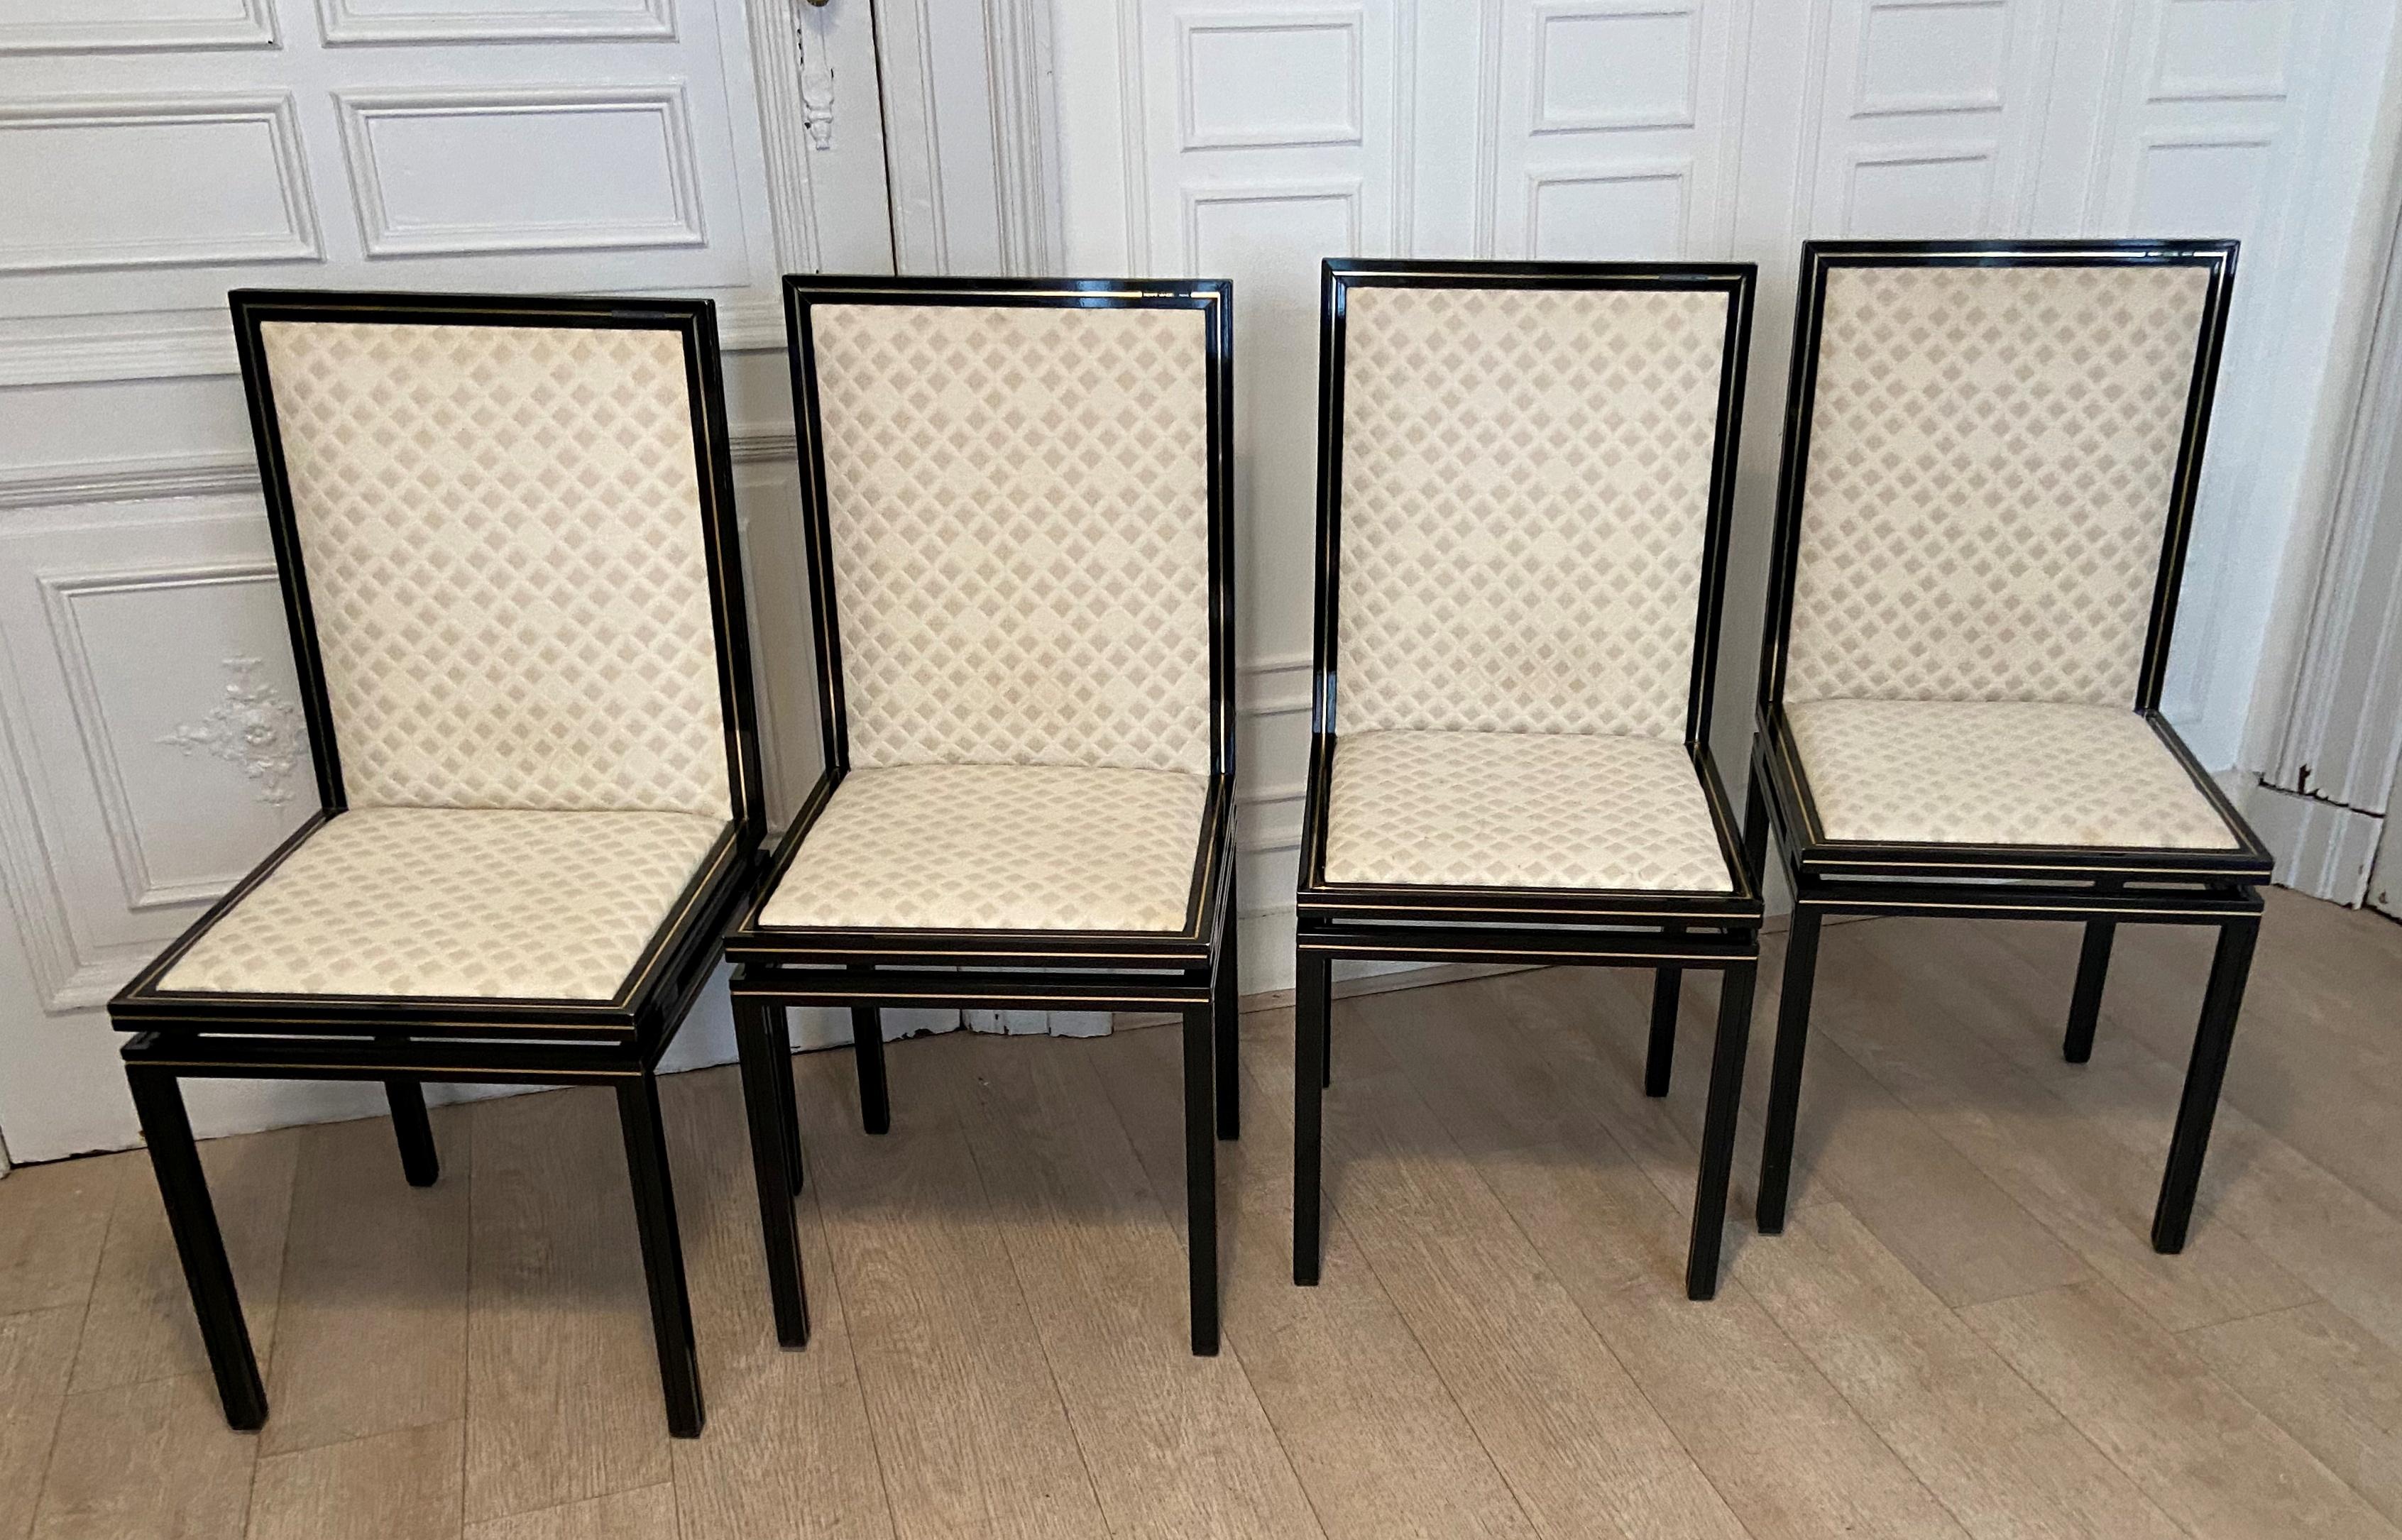 Satz von 6 Stühlen des französischen Designers Pierre Vandel aus den 70er Jahren. 
Sehr leichte Struktur aus lackiertem Aluminium. 
4 Stühle mit Jacquardmuster und 2 einfarbige Stühle.
 